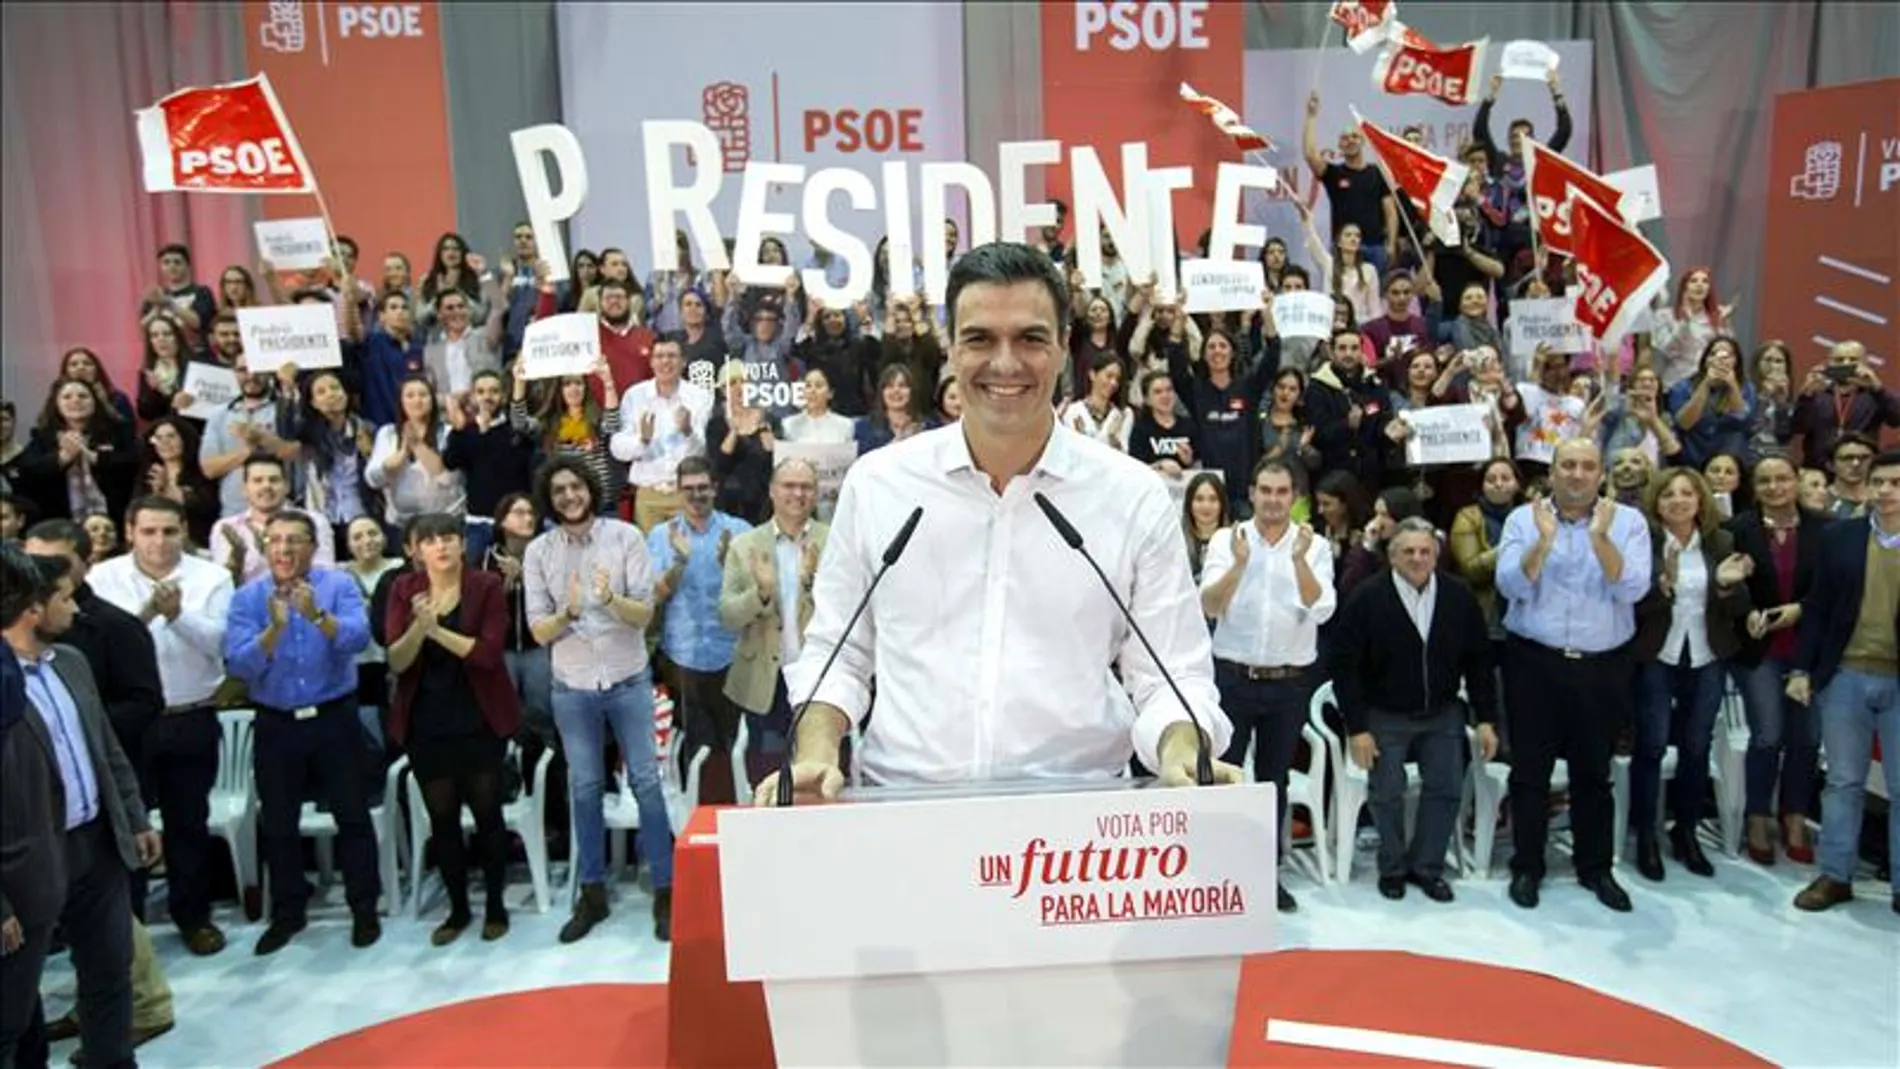 El candidato a la presidendencia del Gobierno por el PSOE, Pedro Sánchez